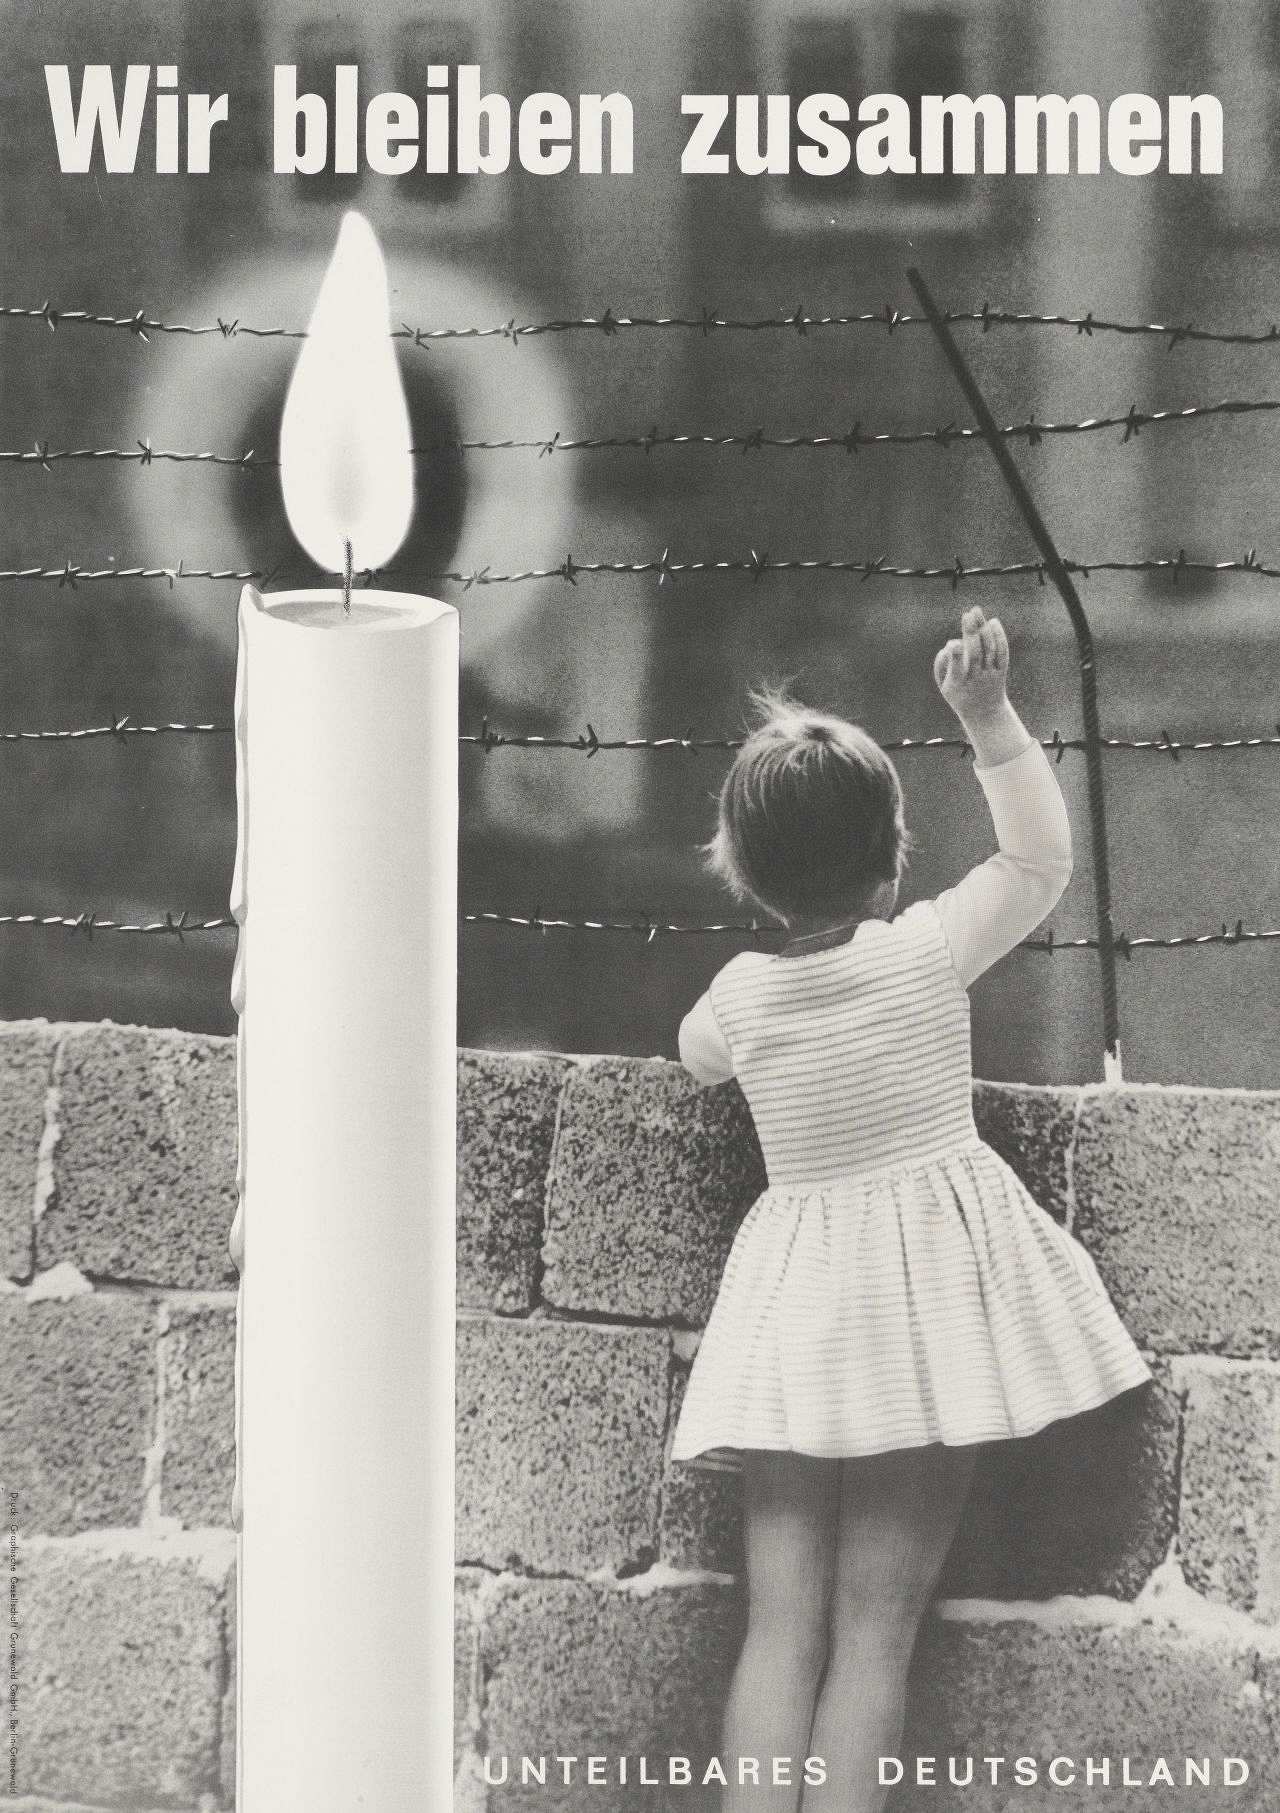 Das schwarz-weiße Plakat zeigt das Foto eines kleinen Mädchens, das über eine Mauer mit Stacheldraht winkt. Auf der linken Plakathälfte ist eine überdimensionale, brennende Kerze abgebildet. Auf der oberen Plakathälfte steht folgender Text: 